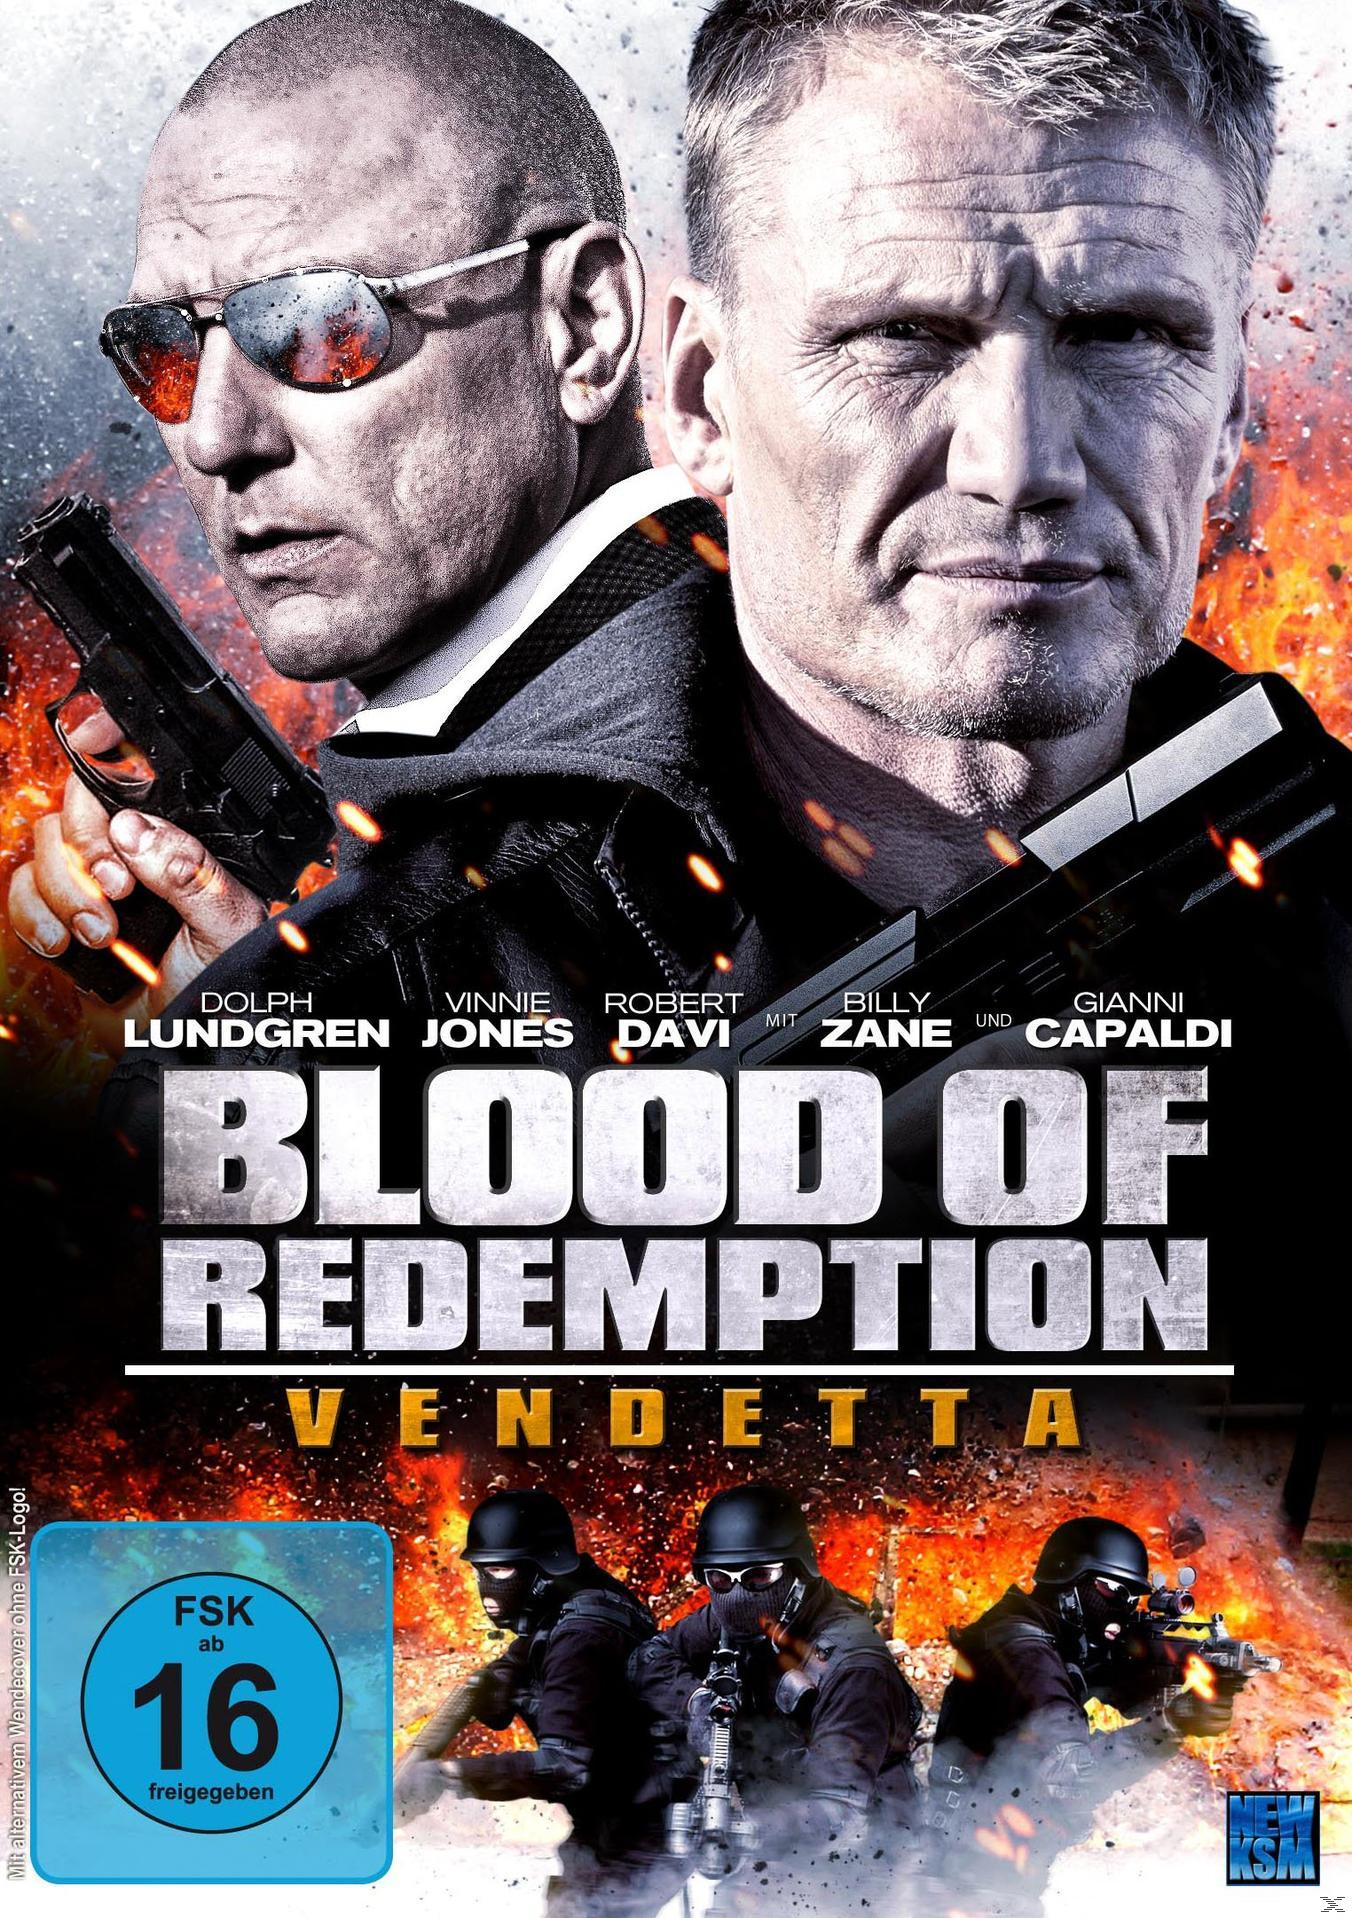 of Blood – DVD Vendetta Redemption